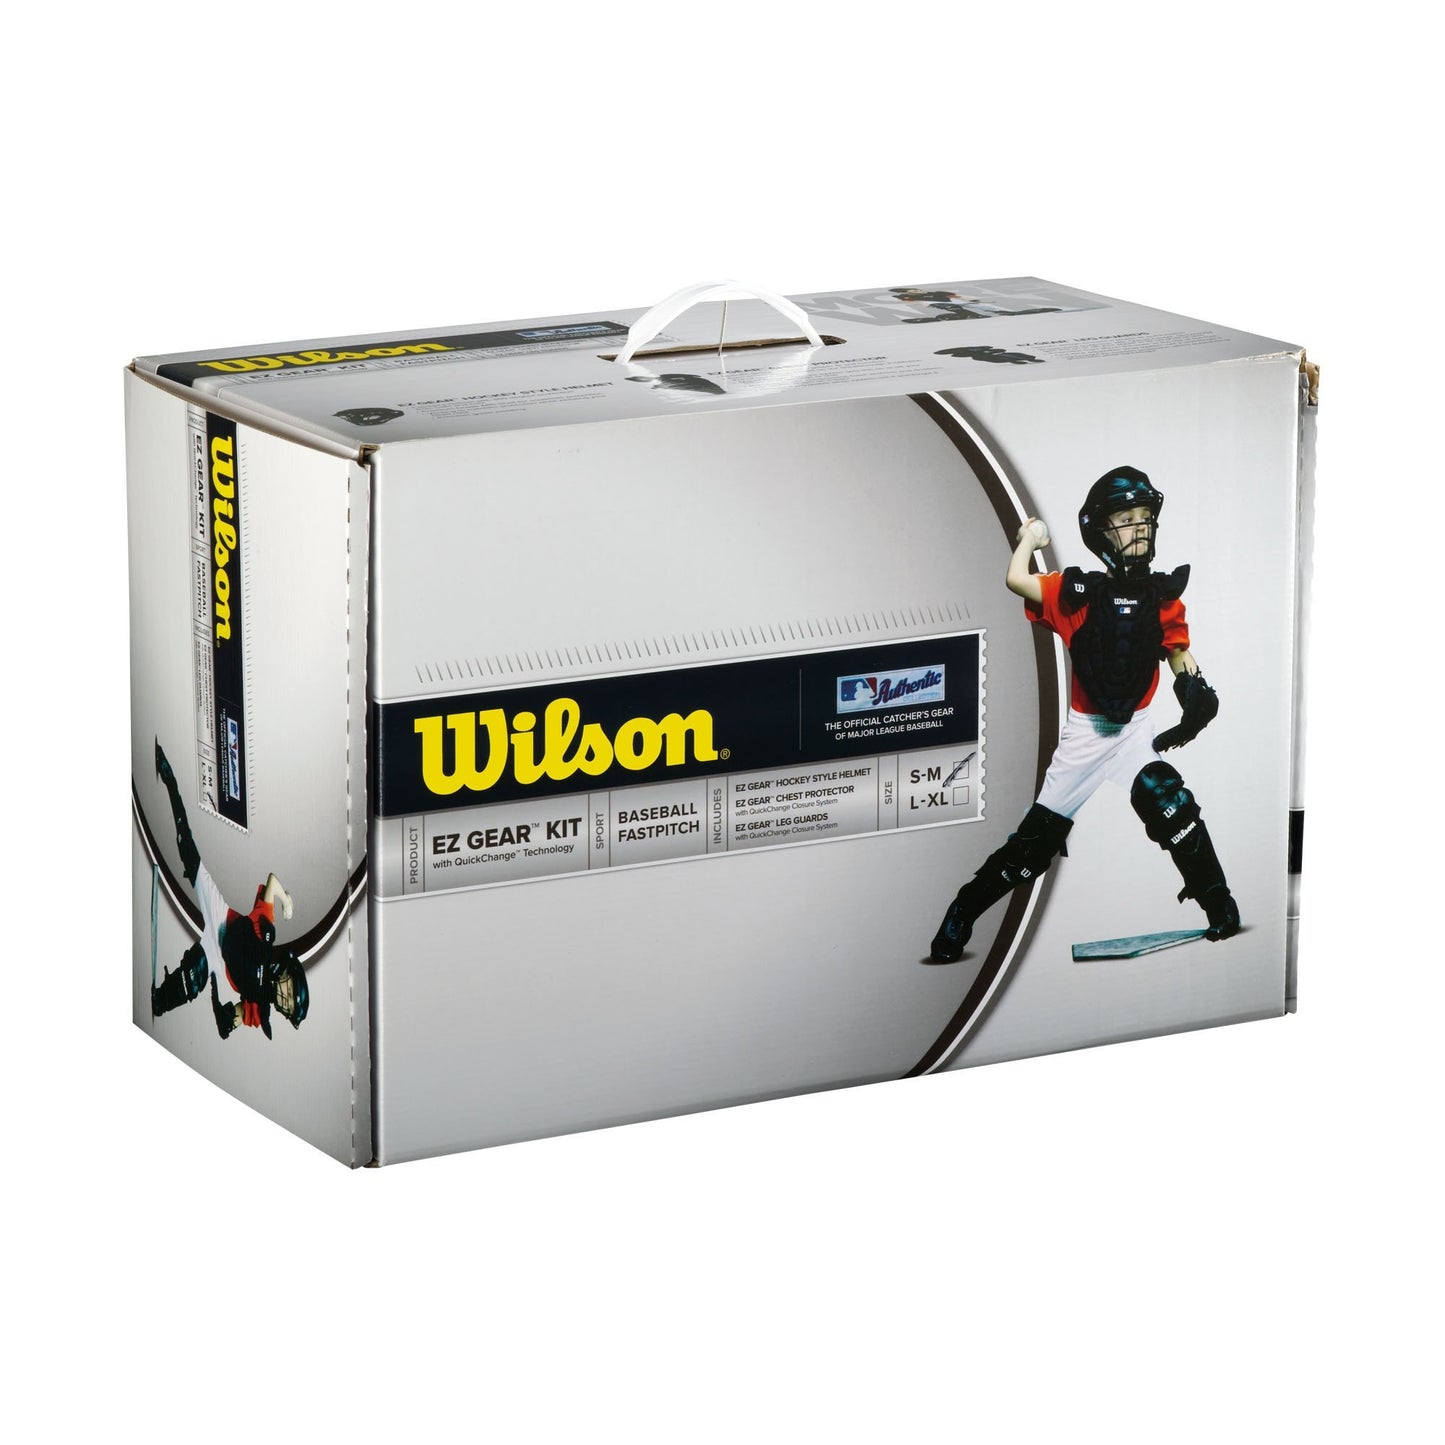 Wilson EZ Gear 2.0 Catcher's Gear Kit